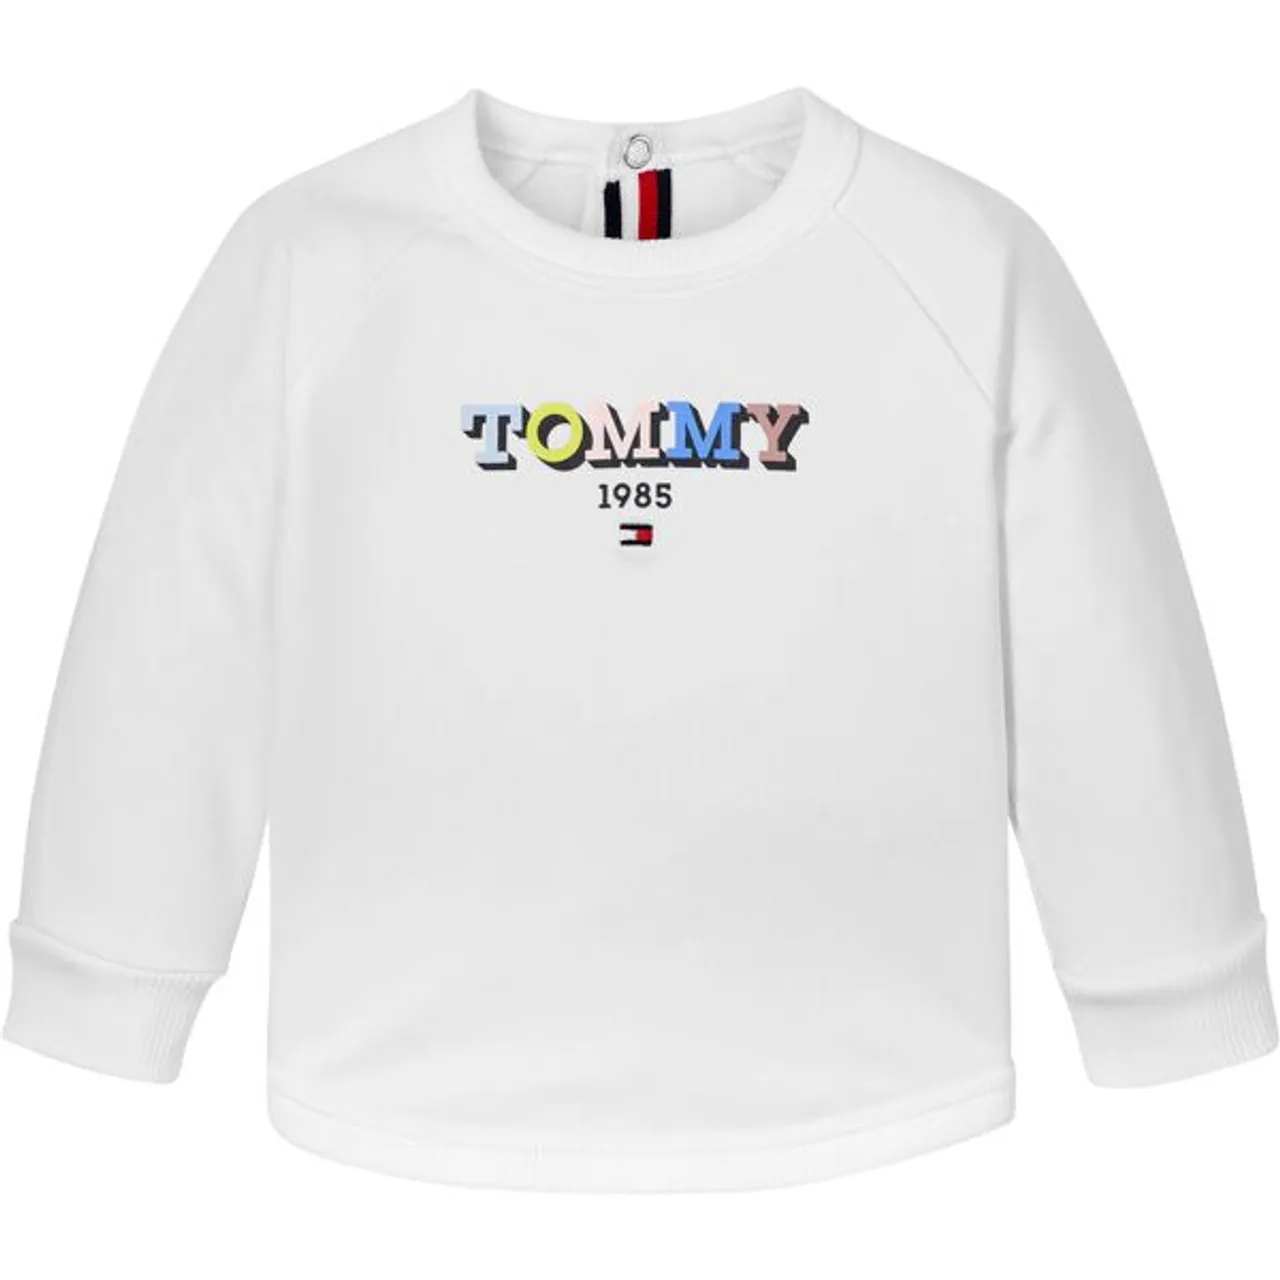 Sweatshirt TOMMY HILFIGER "BABY MULTICOLOR SWEATSHIRT" Gr. 92, weiß (white) Baby Sweatshirts